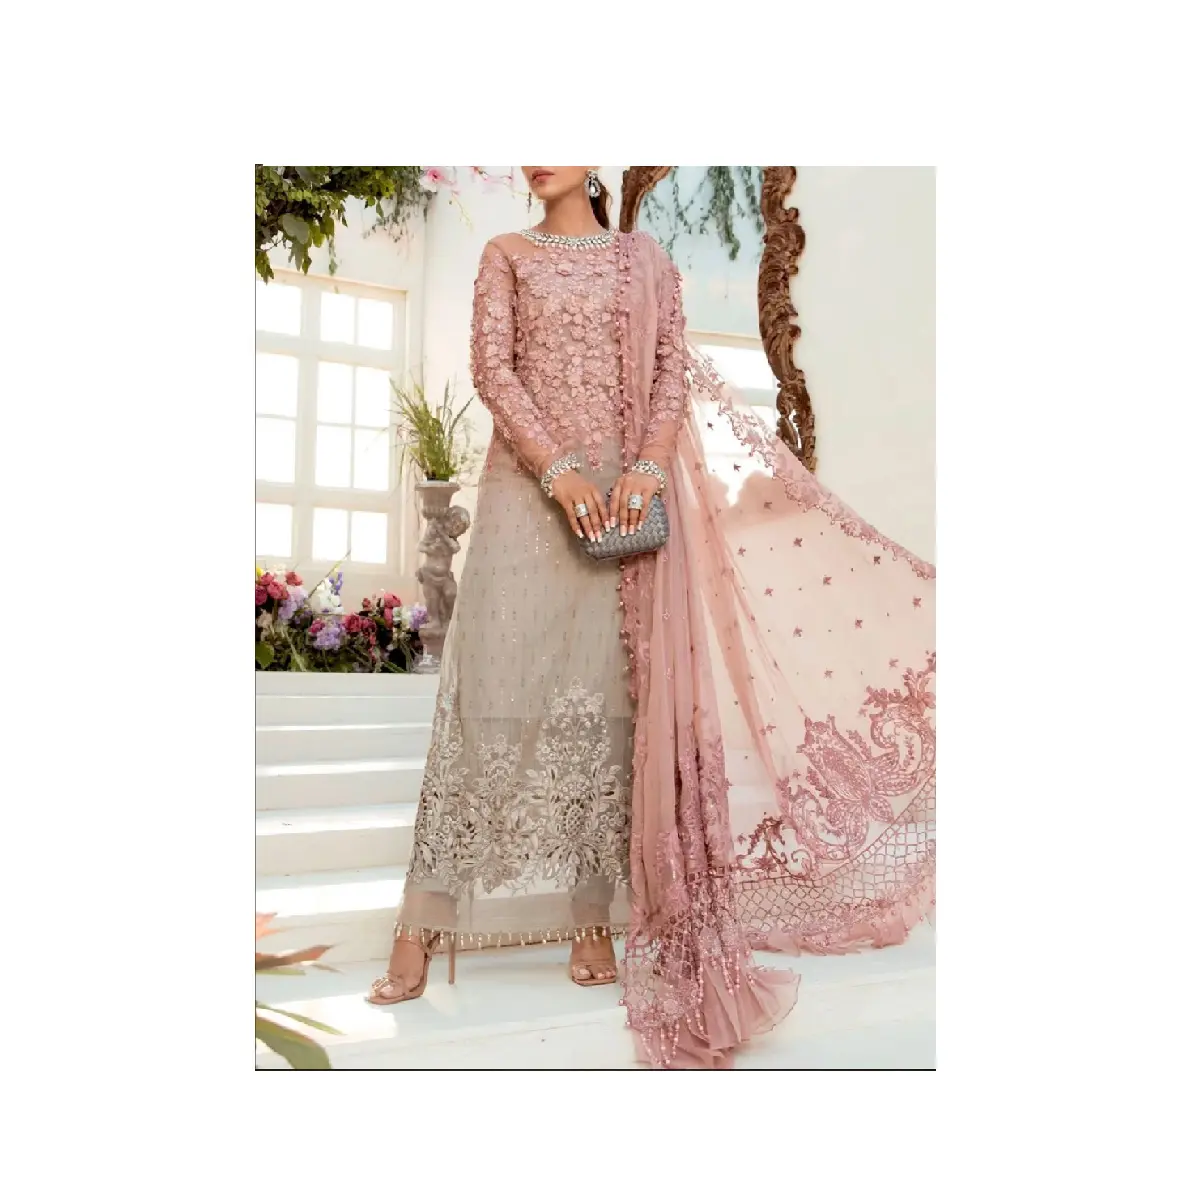 Unique Styles Stylish Pakistani Indian Punjabi Party Wears Boutique Collection Pakistani customize suit Latest Design Dresses